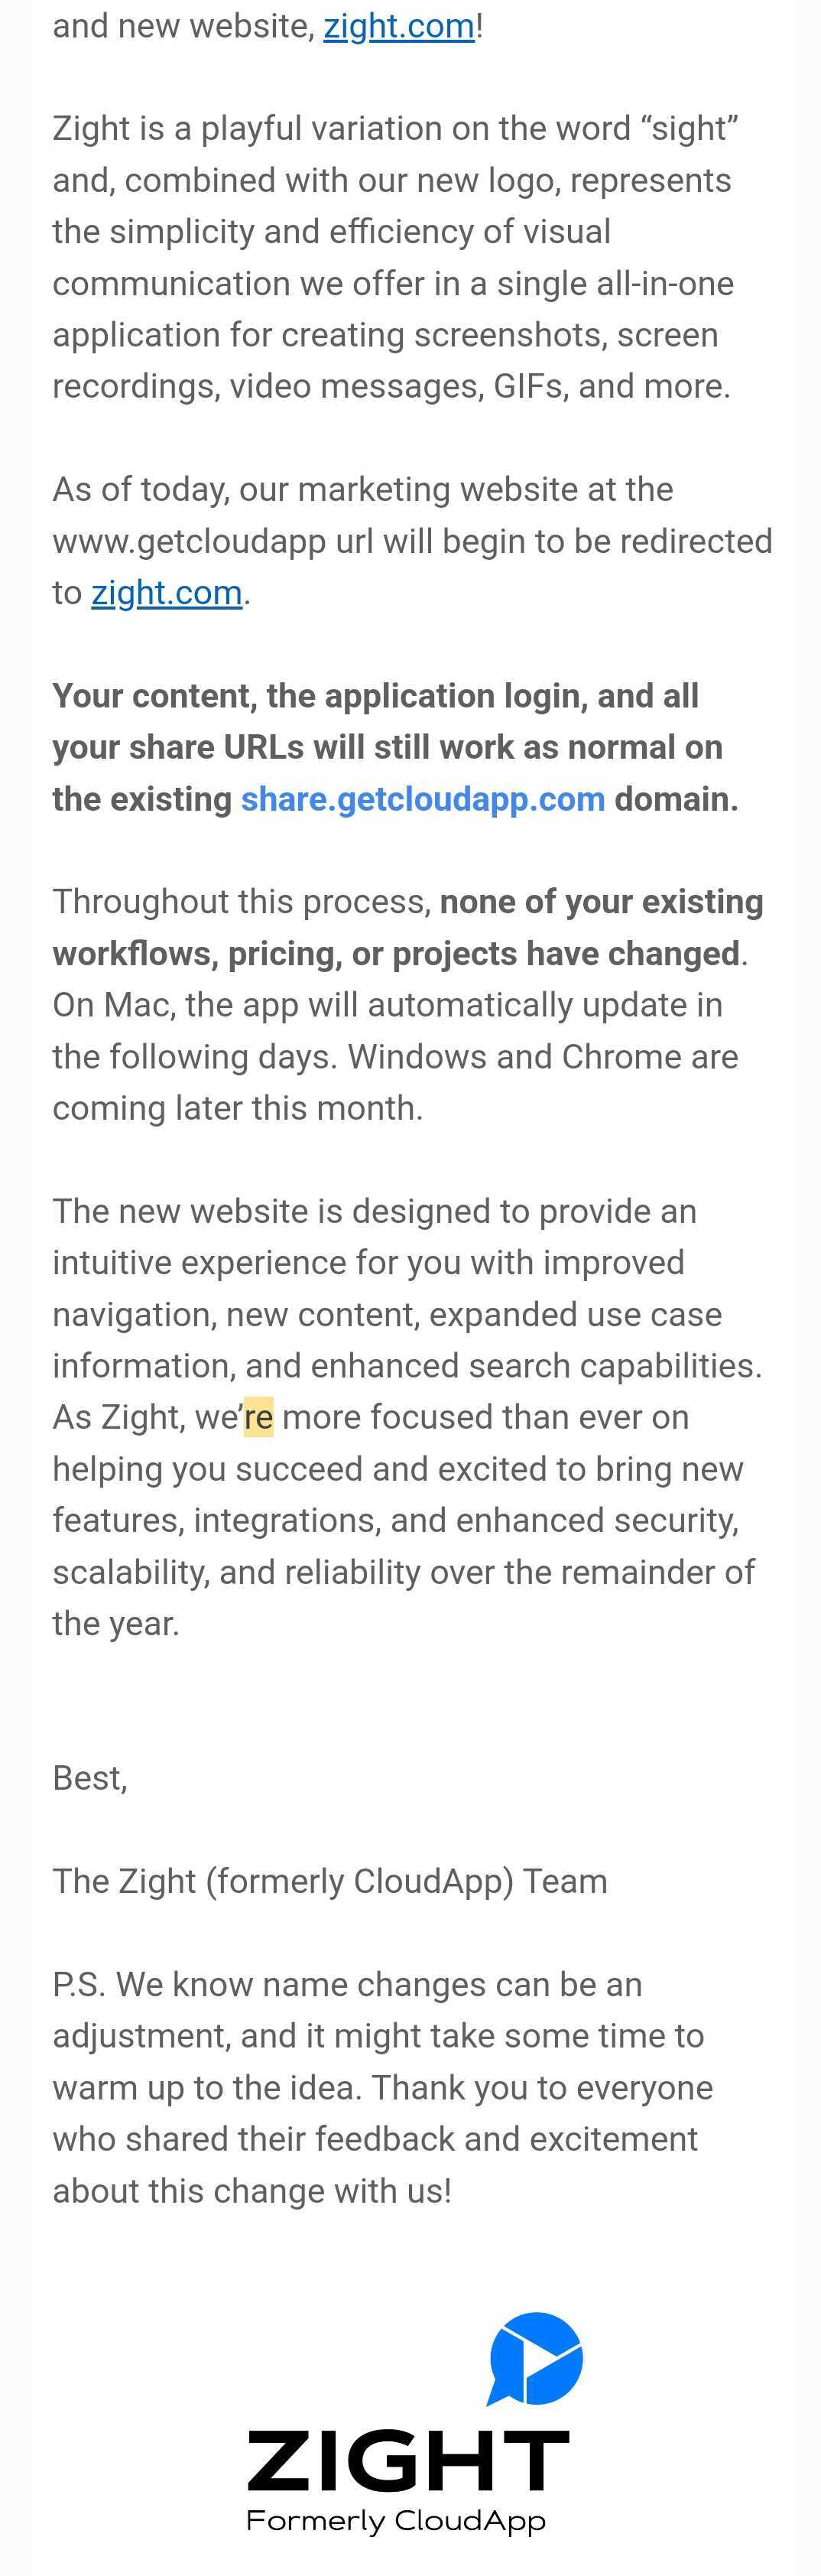 SaaS Rebranding Announcement Emails: Screenshot of Zight's email announcing its rebranding